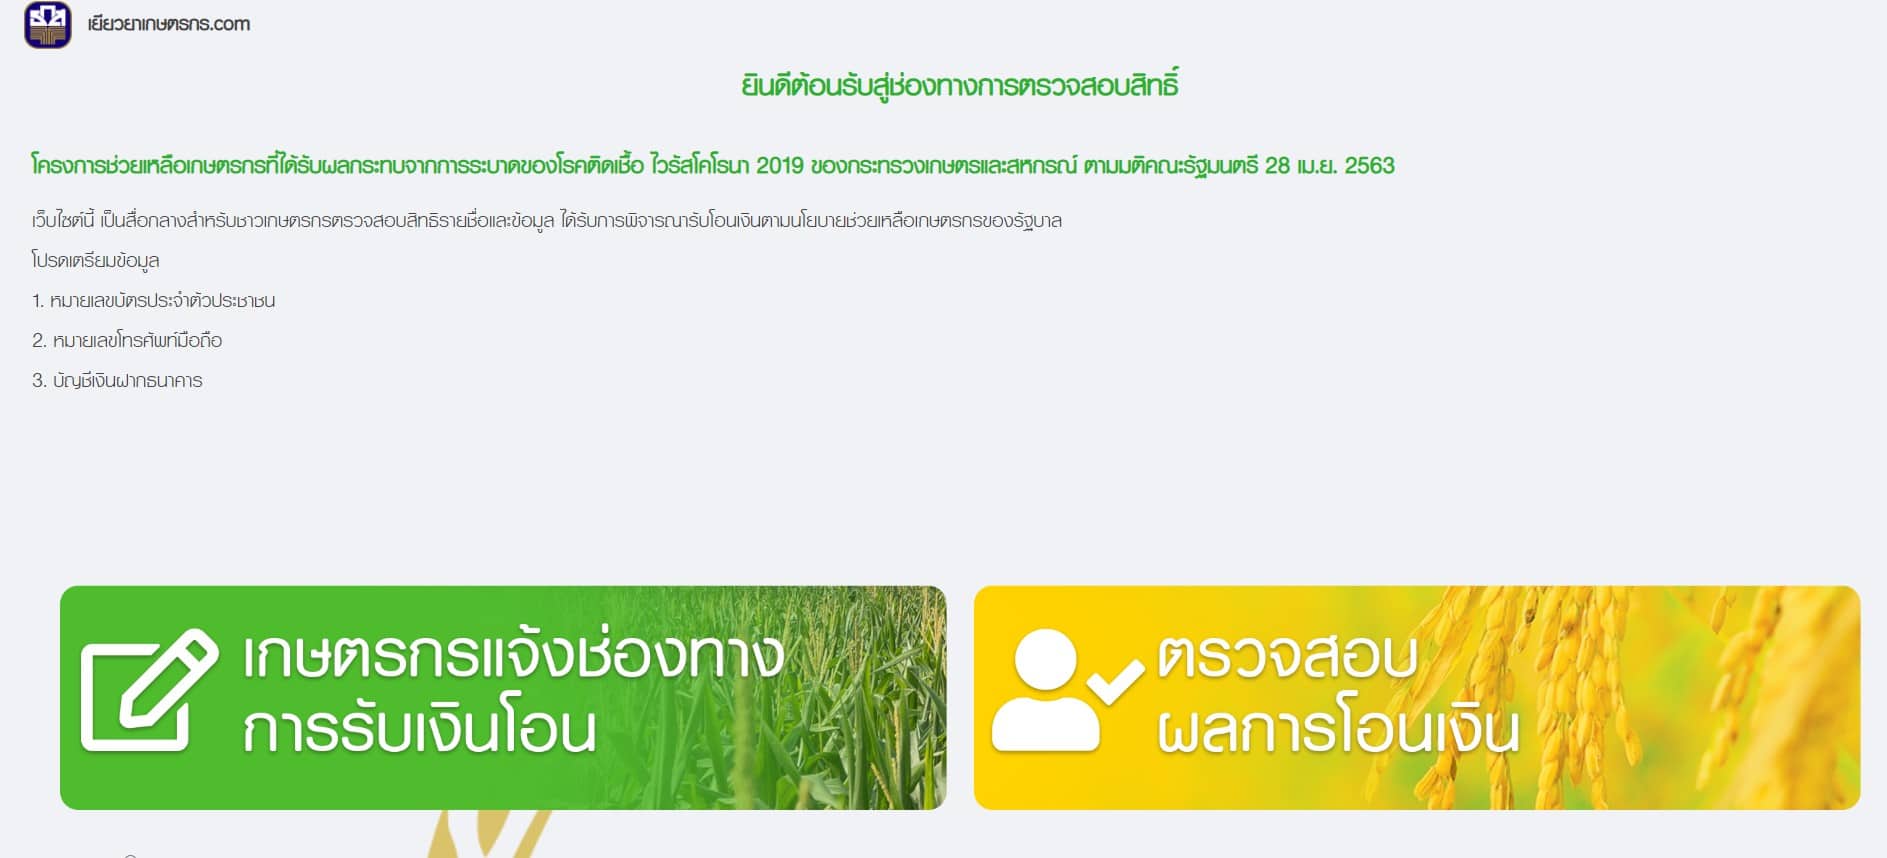 เปิดแล้ว ธ.ก.ส. เปิดช่องทางการตรวจสอบสิทธิ์รับเงินเยียวยาเกษตรกร www.เยียวยาเกษตรกร.com รับเงิน 15,000 บาท